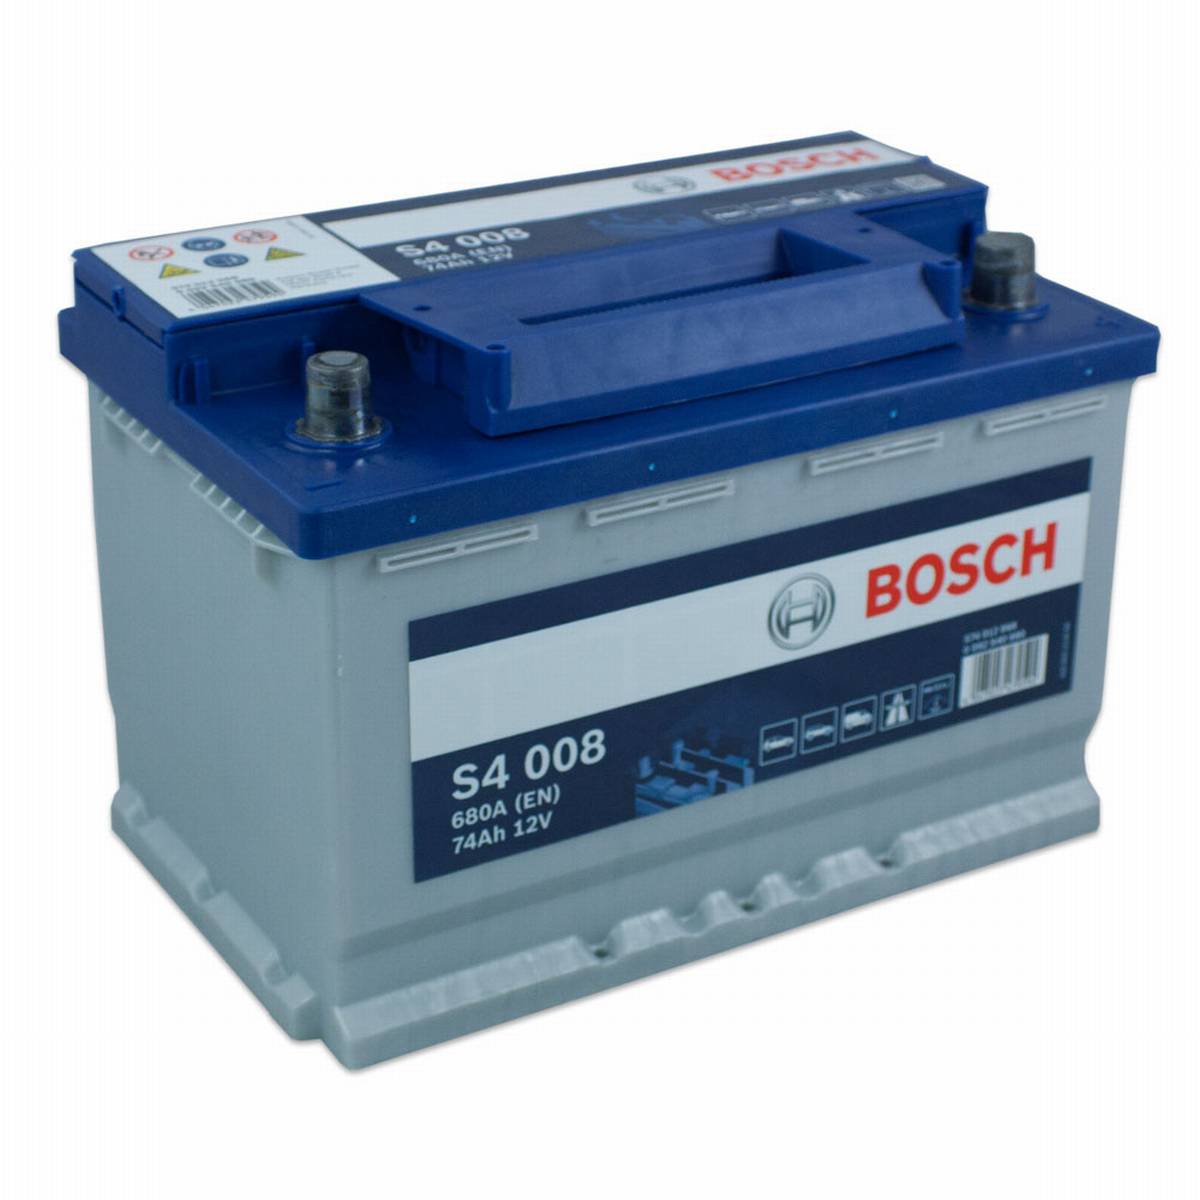 Bosch car battery S4 008 574 012 068 12V 74Ah 680A/EN, Starter batteries, Boots & Marine, Batteries by application